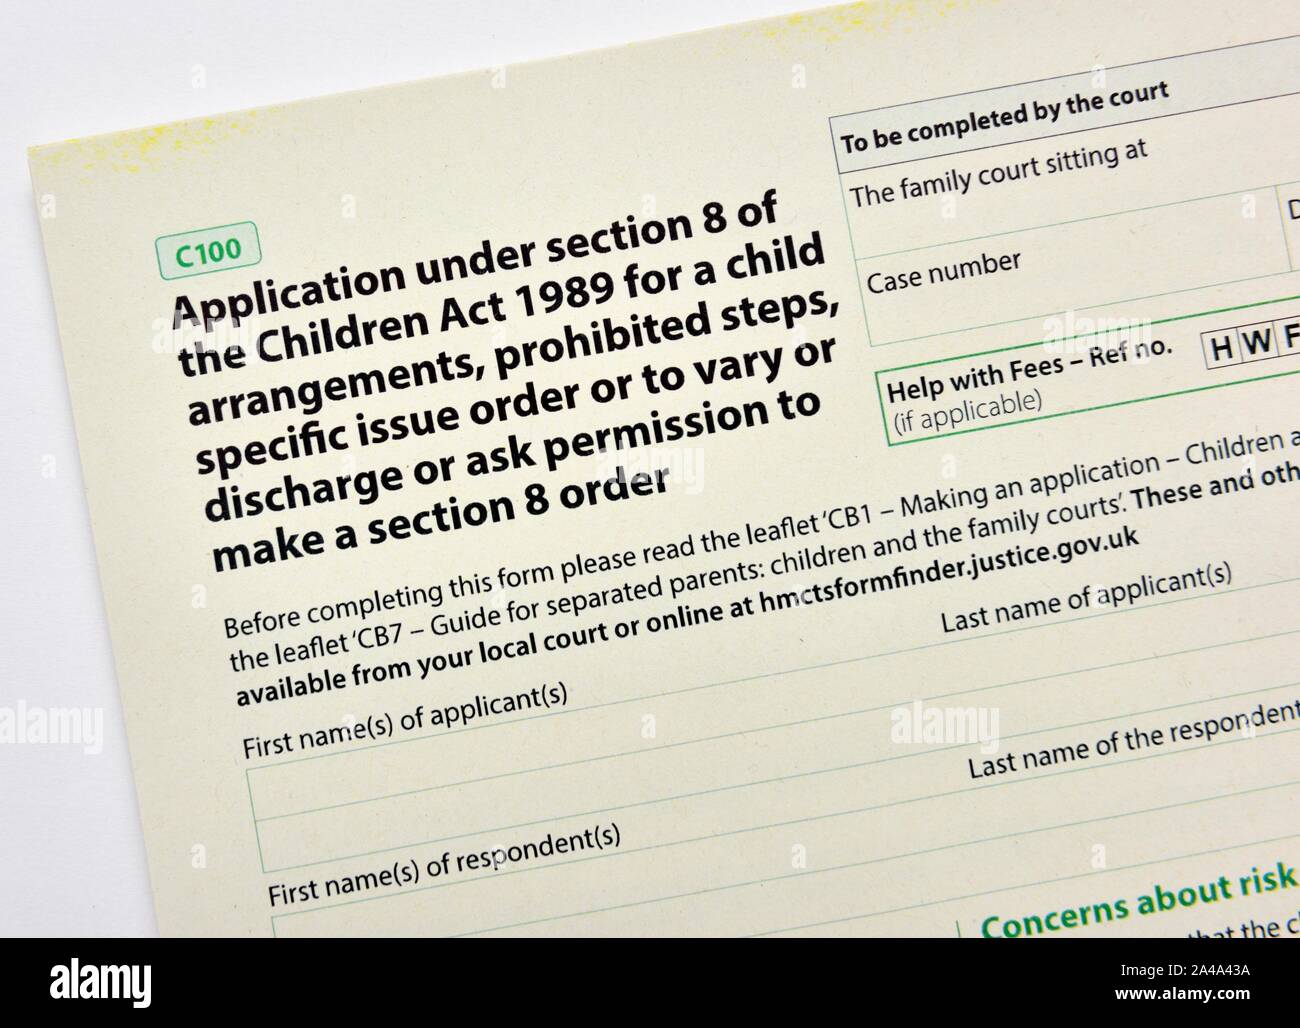 C100 Loi sur le formulaire de demande,enfants,1989,section 8 dispositions de l'enfant commande Banque D'Images